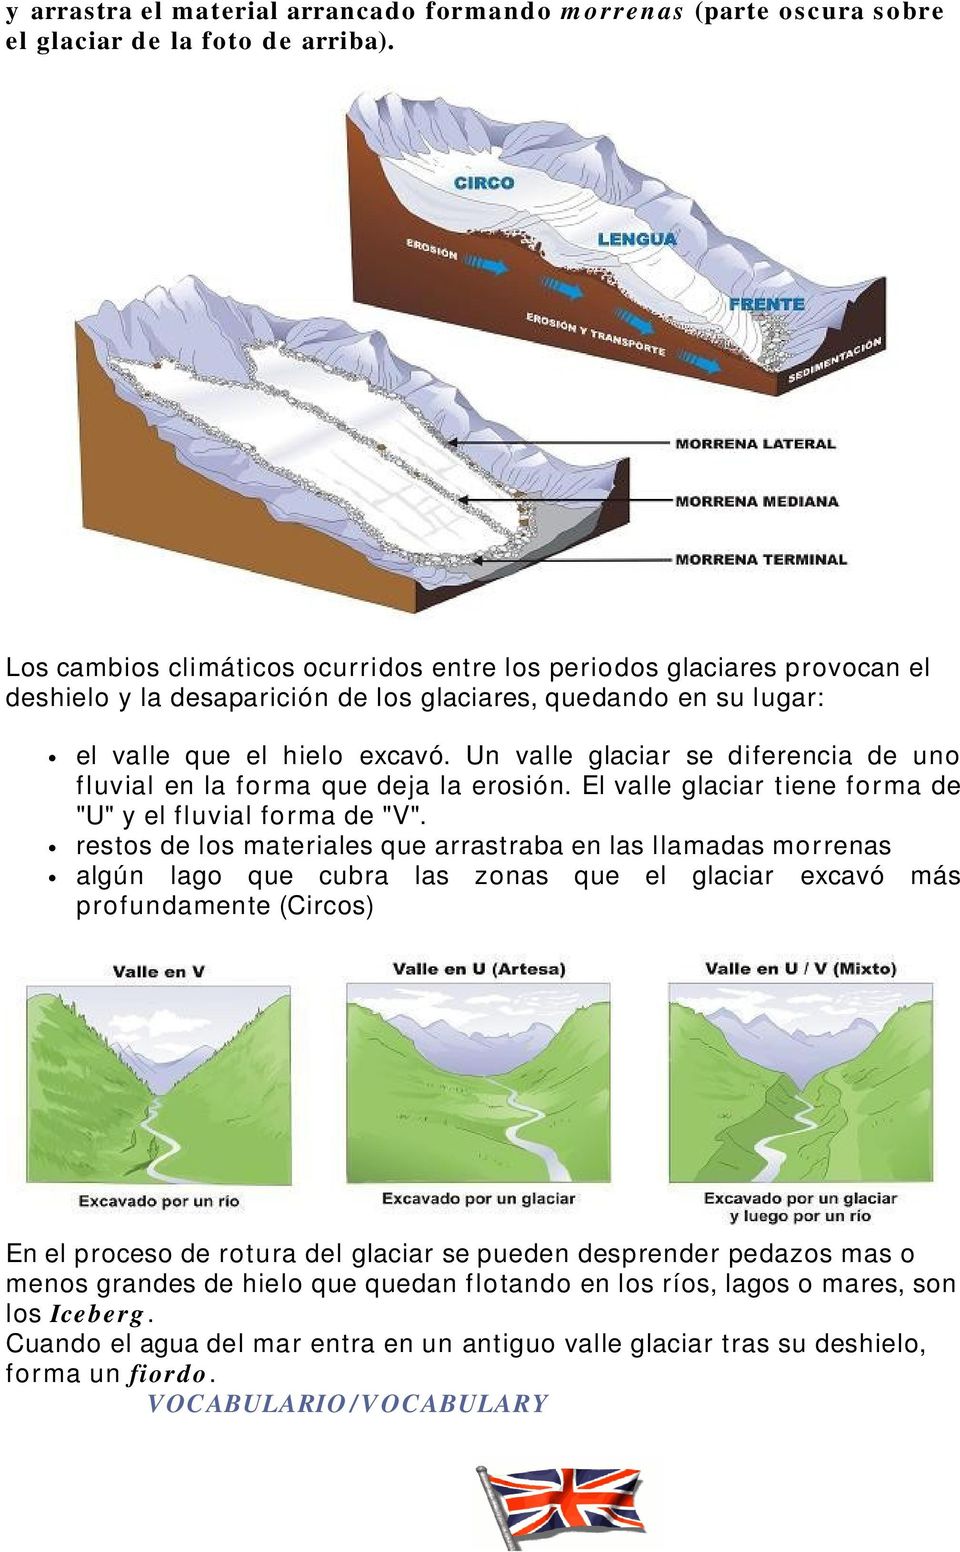 Un valle glaciar se diferencia de uno fluvial en la forma que deja la erosión. El valle glaciar tiene forma de "U" y el fluvial forma de "V".